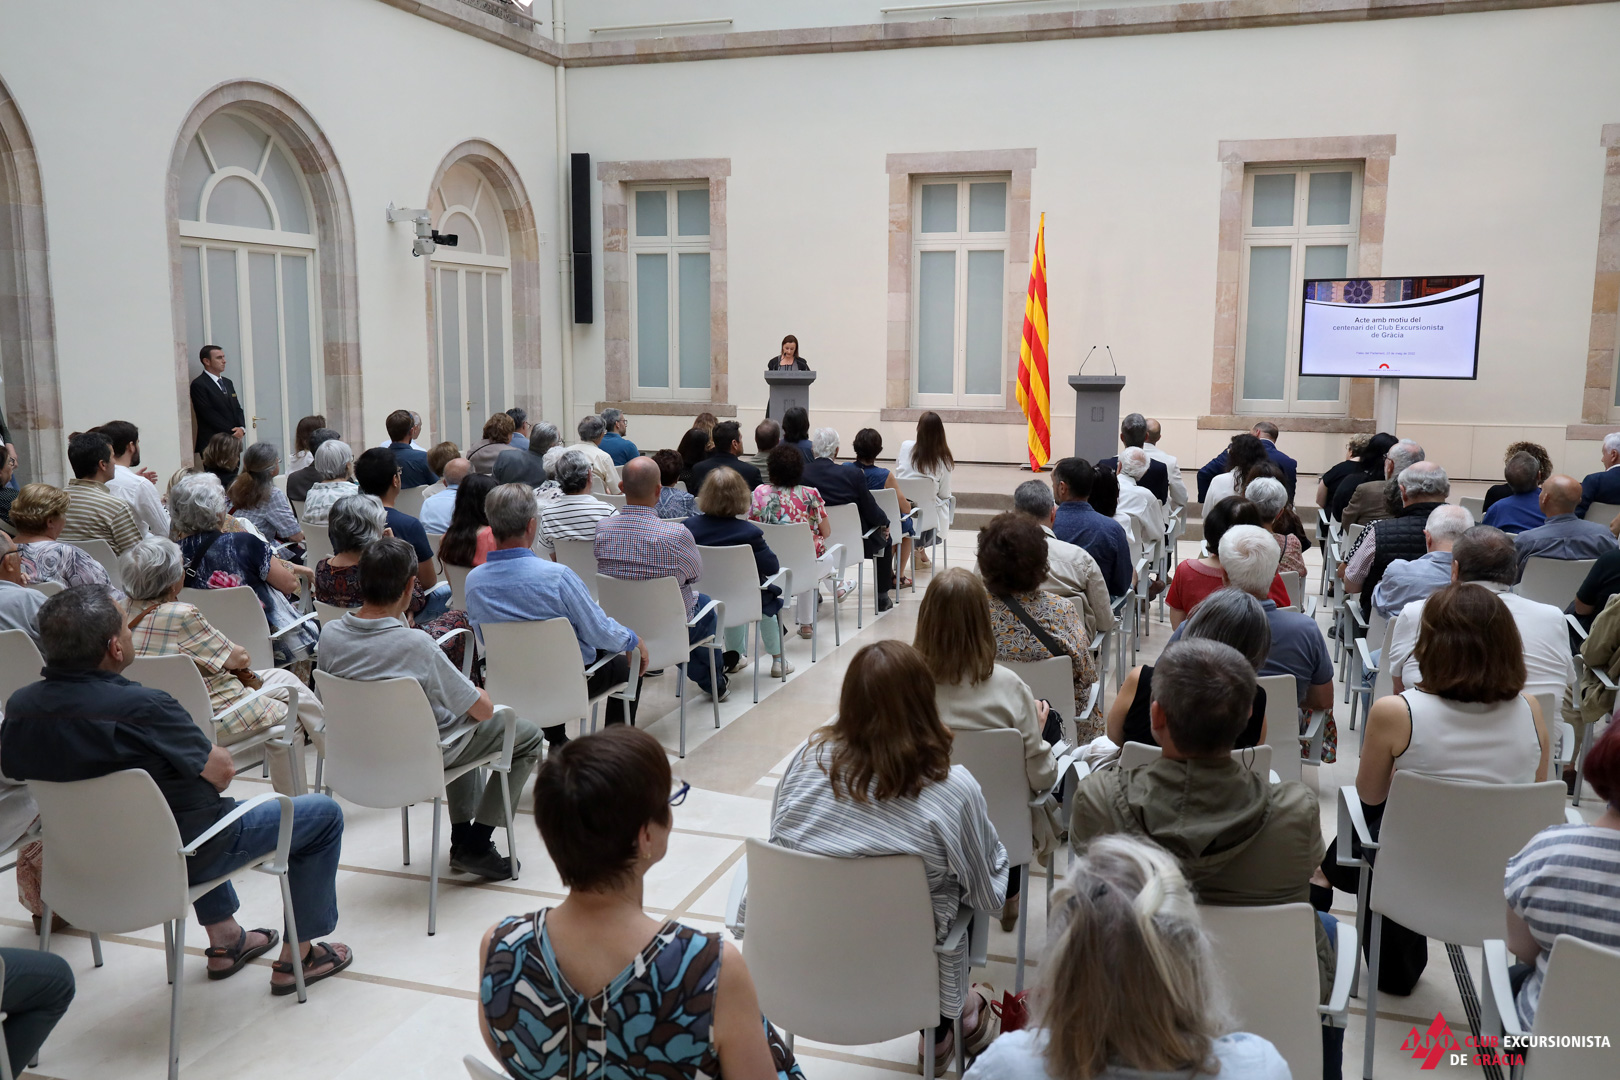 Acte commemoratiu al Parlament de Catalunya – 23 de maig